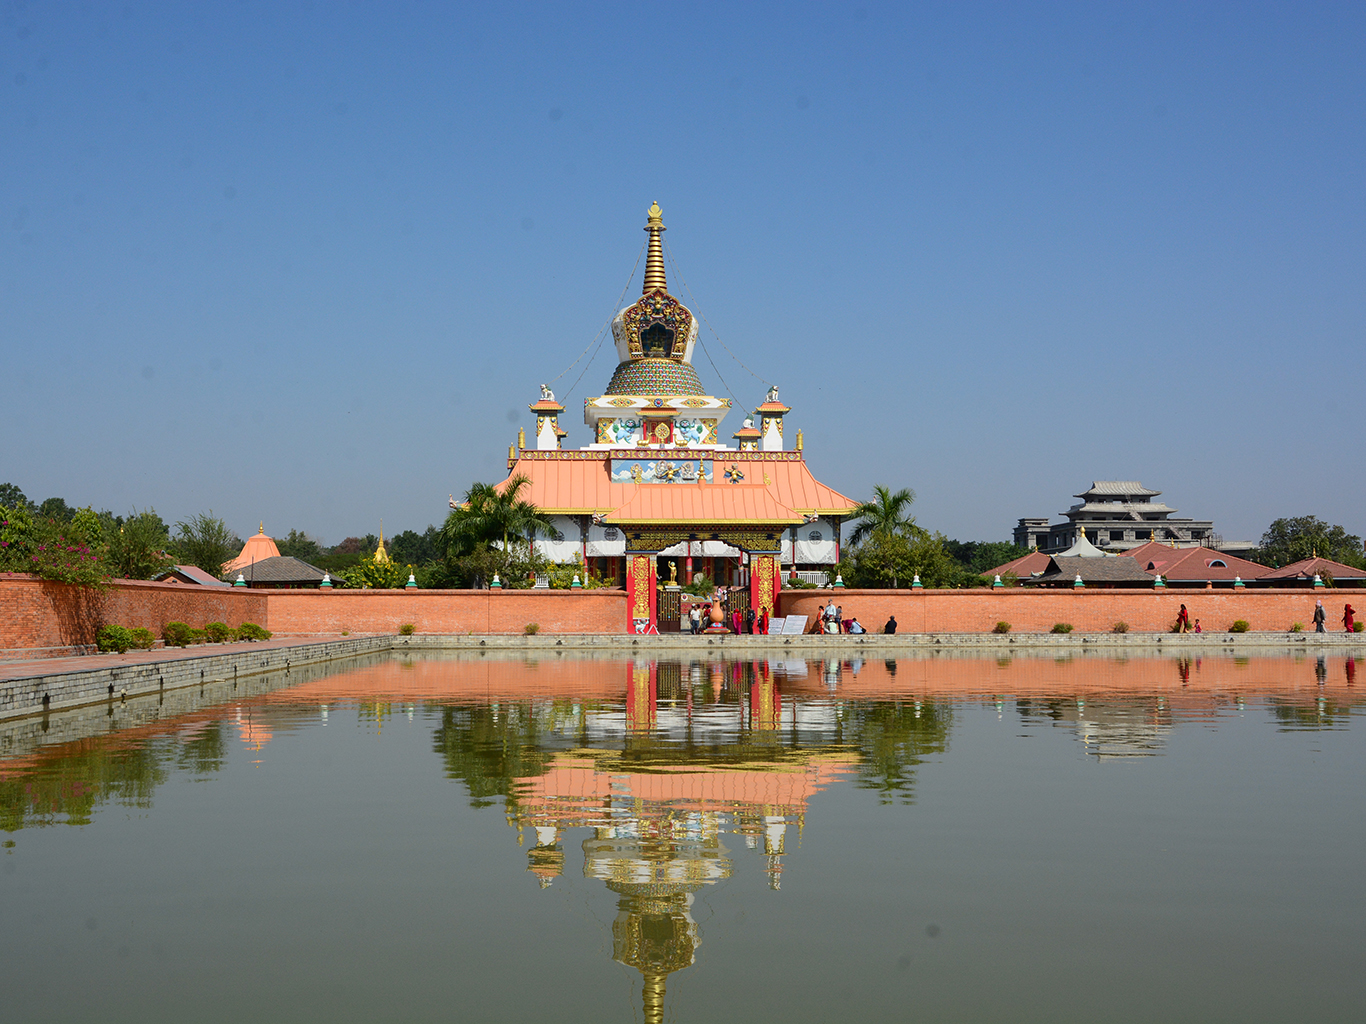 Jeden z mnoha buddhistických klášterů nacházející se v posvátném Lumbini